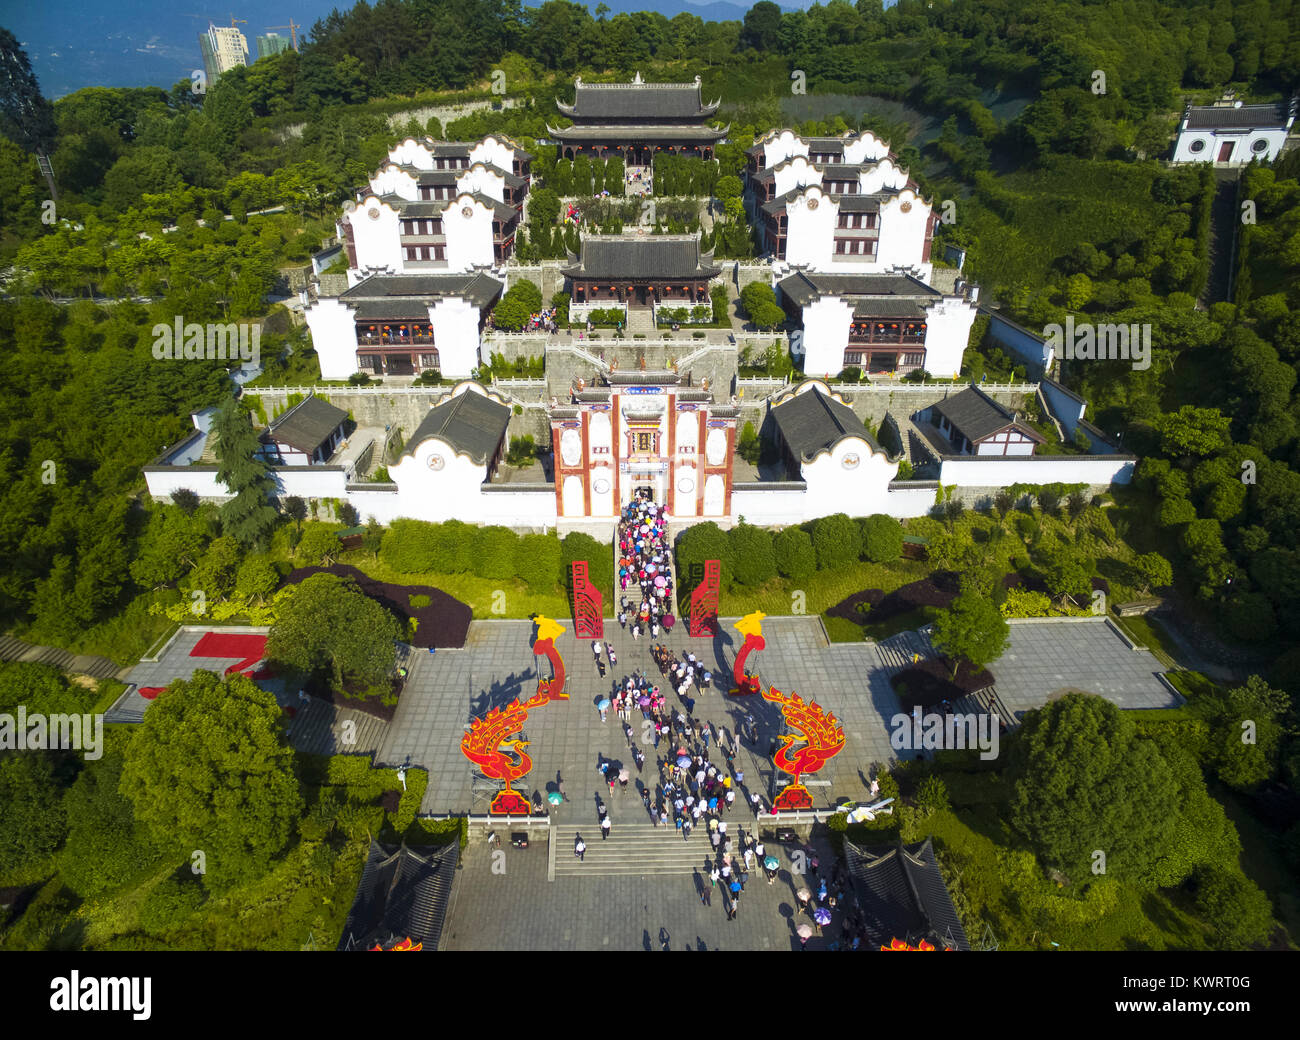 Pechino, Cina. 28 Maggio, 2017. Foto aerea adottate il 28 Maggio 2017 mostra il memorial temple di Qu Yuan Zigui nella contea di Cina centrale della provincia di Hubei. I fotografi con Xinhua News Agency ha mostrato di siti storici in tutto il paese con fuchi. Credito: Xiong Qi/Xinhua/Alamy Live News Foto Stock